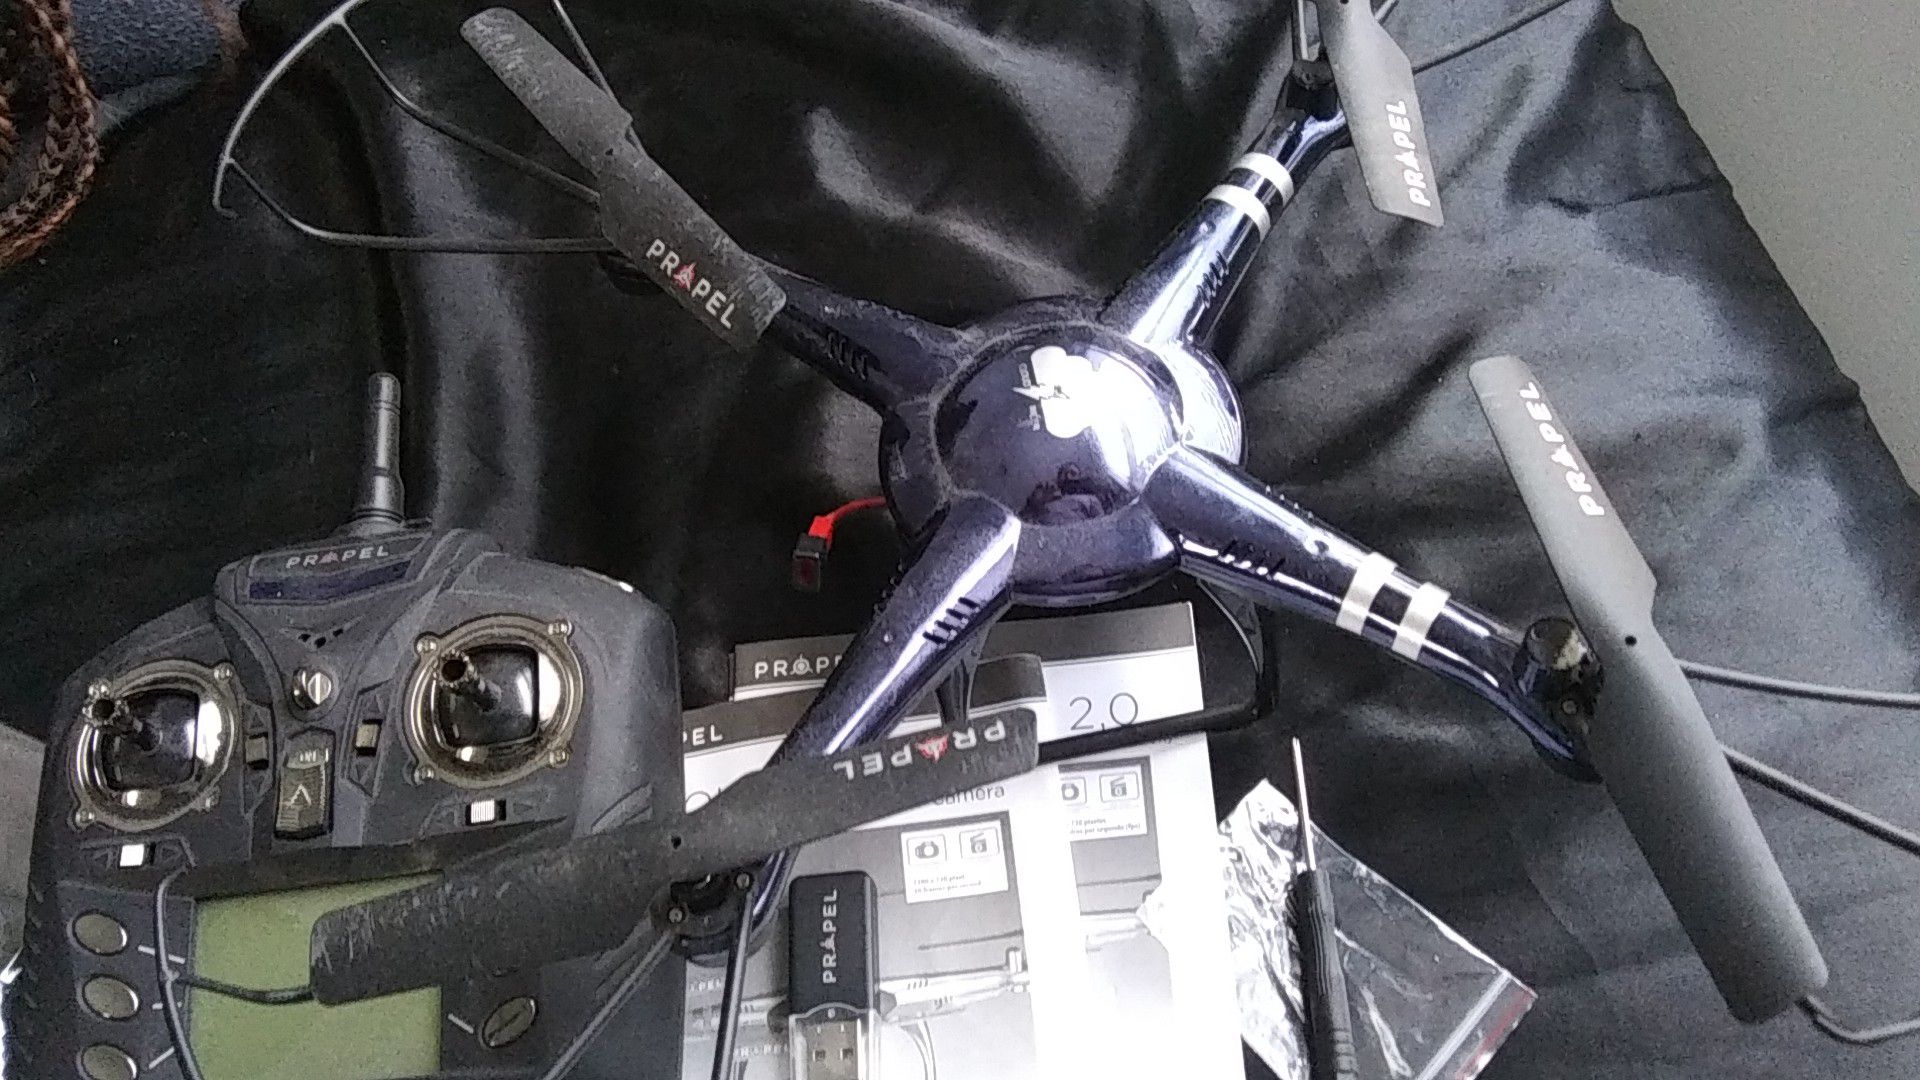 Propel 2.0 hd drone